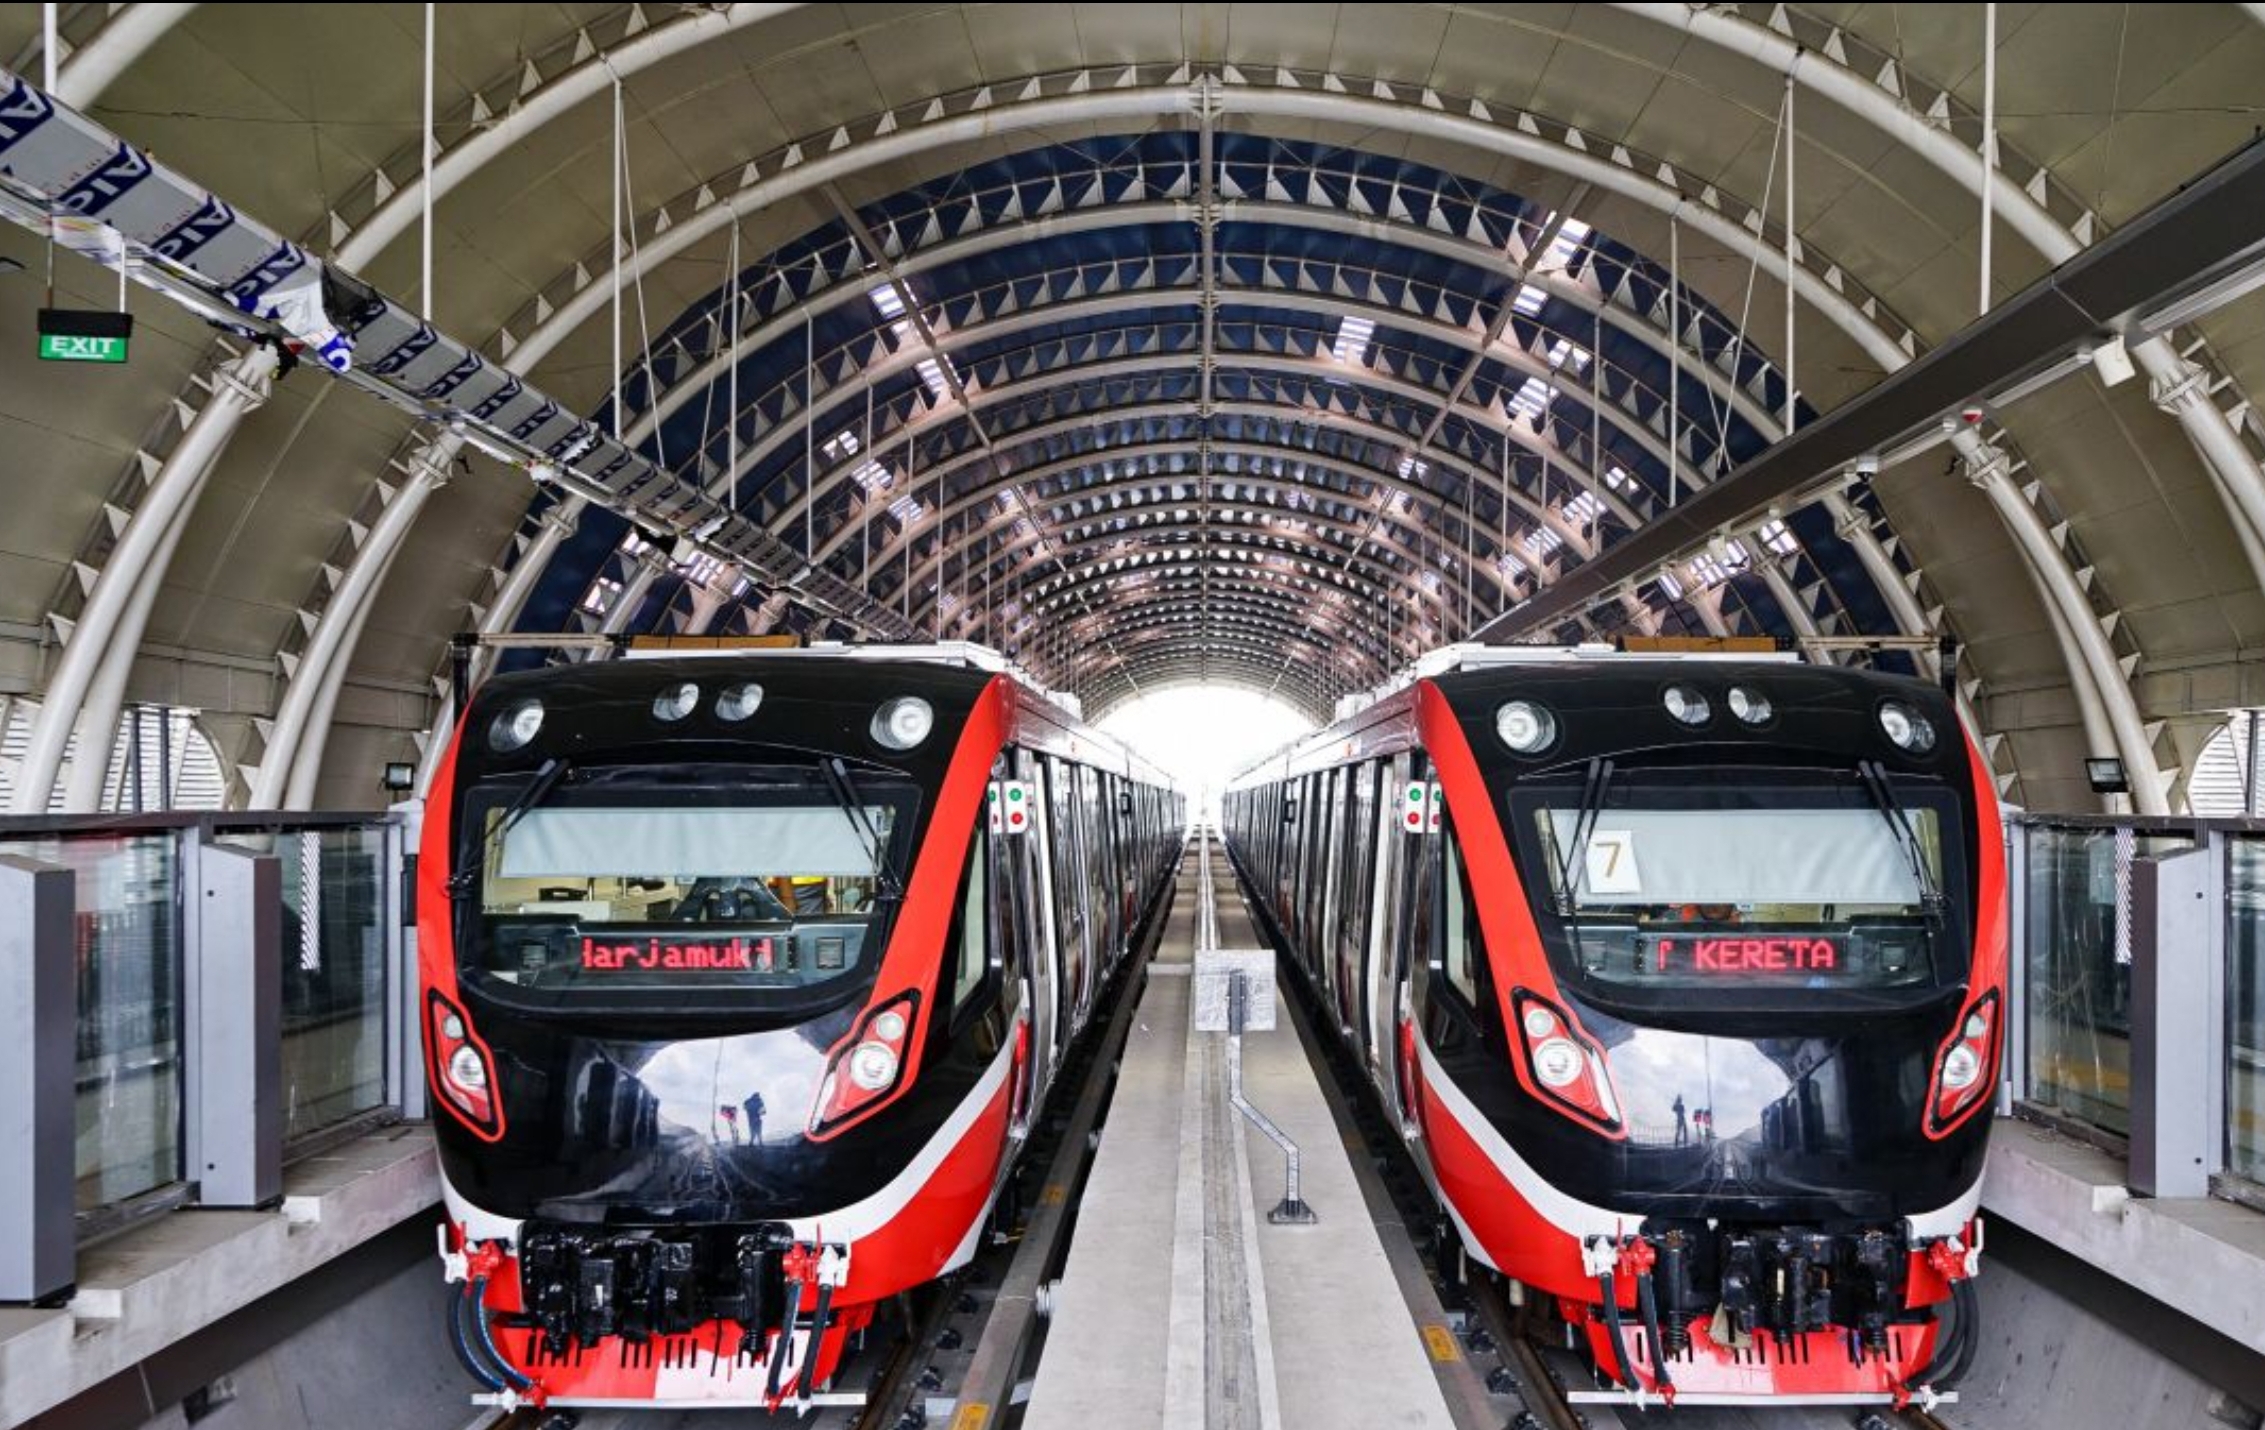 LRT Cirebon Raya Kertajati Masuk Perencanaan Rebana Metropolitan, Hidupkan Jalur Nonaktif Cirebon - Kadipaten?